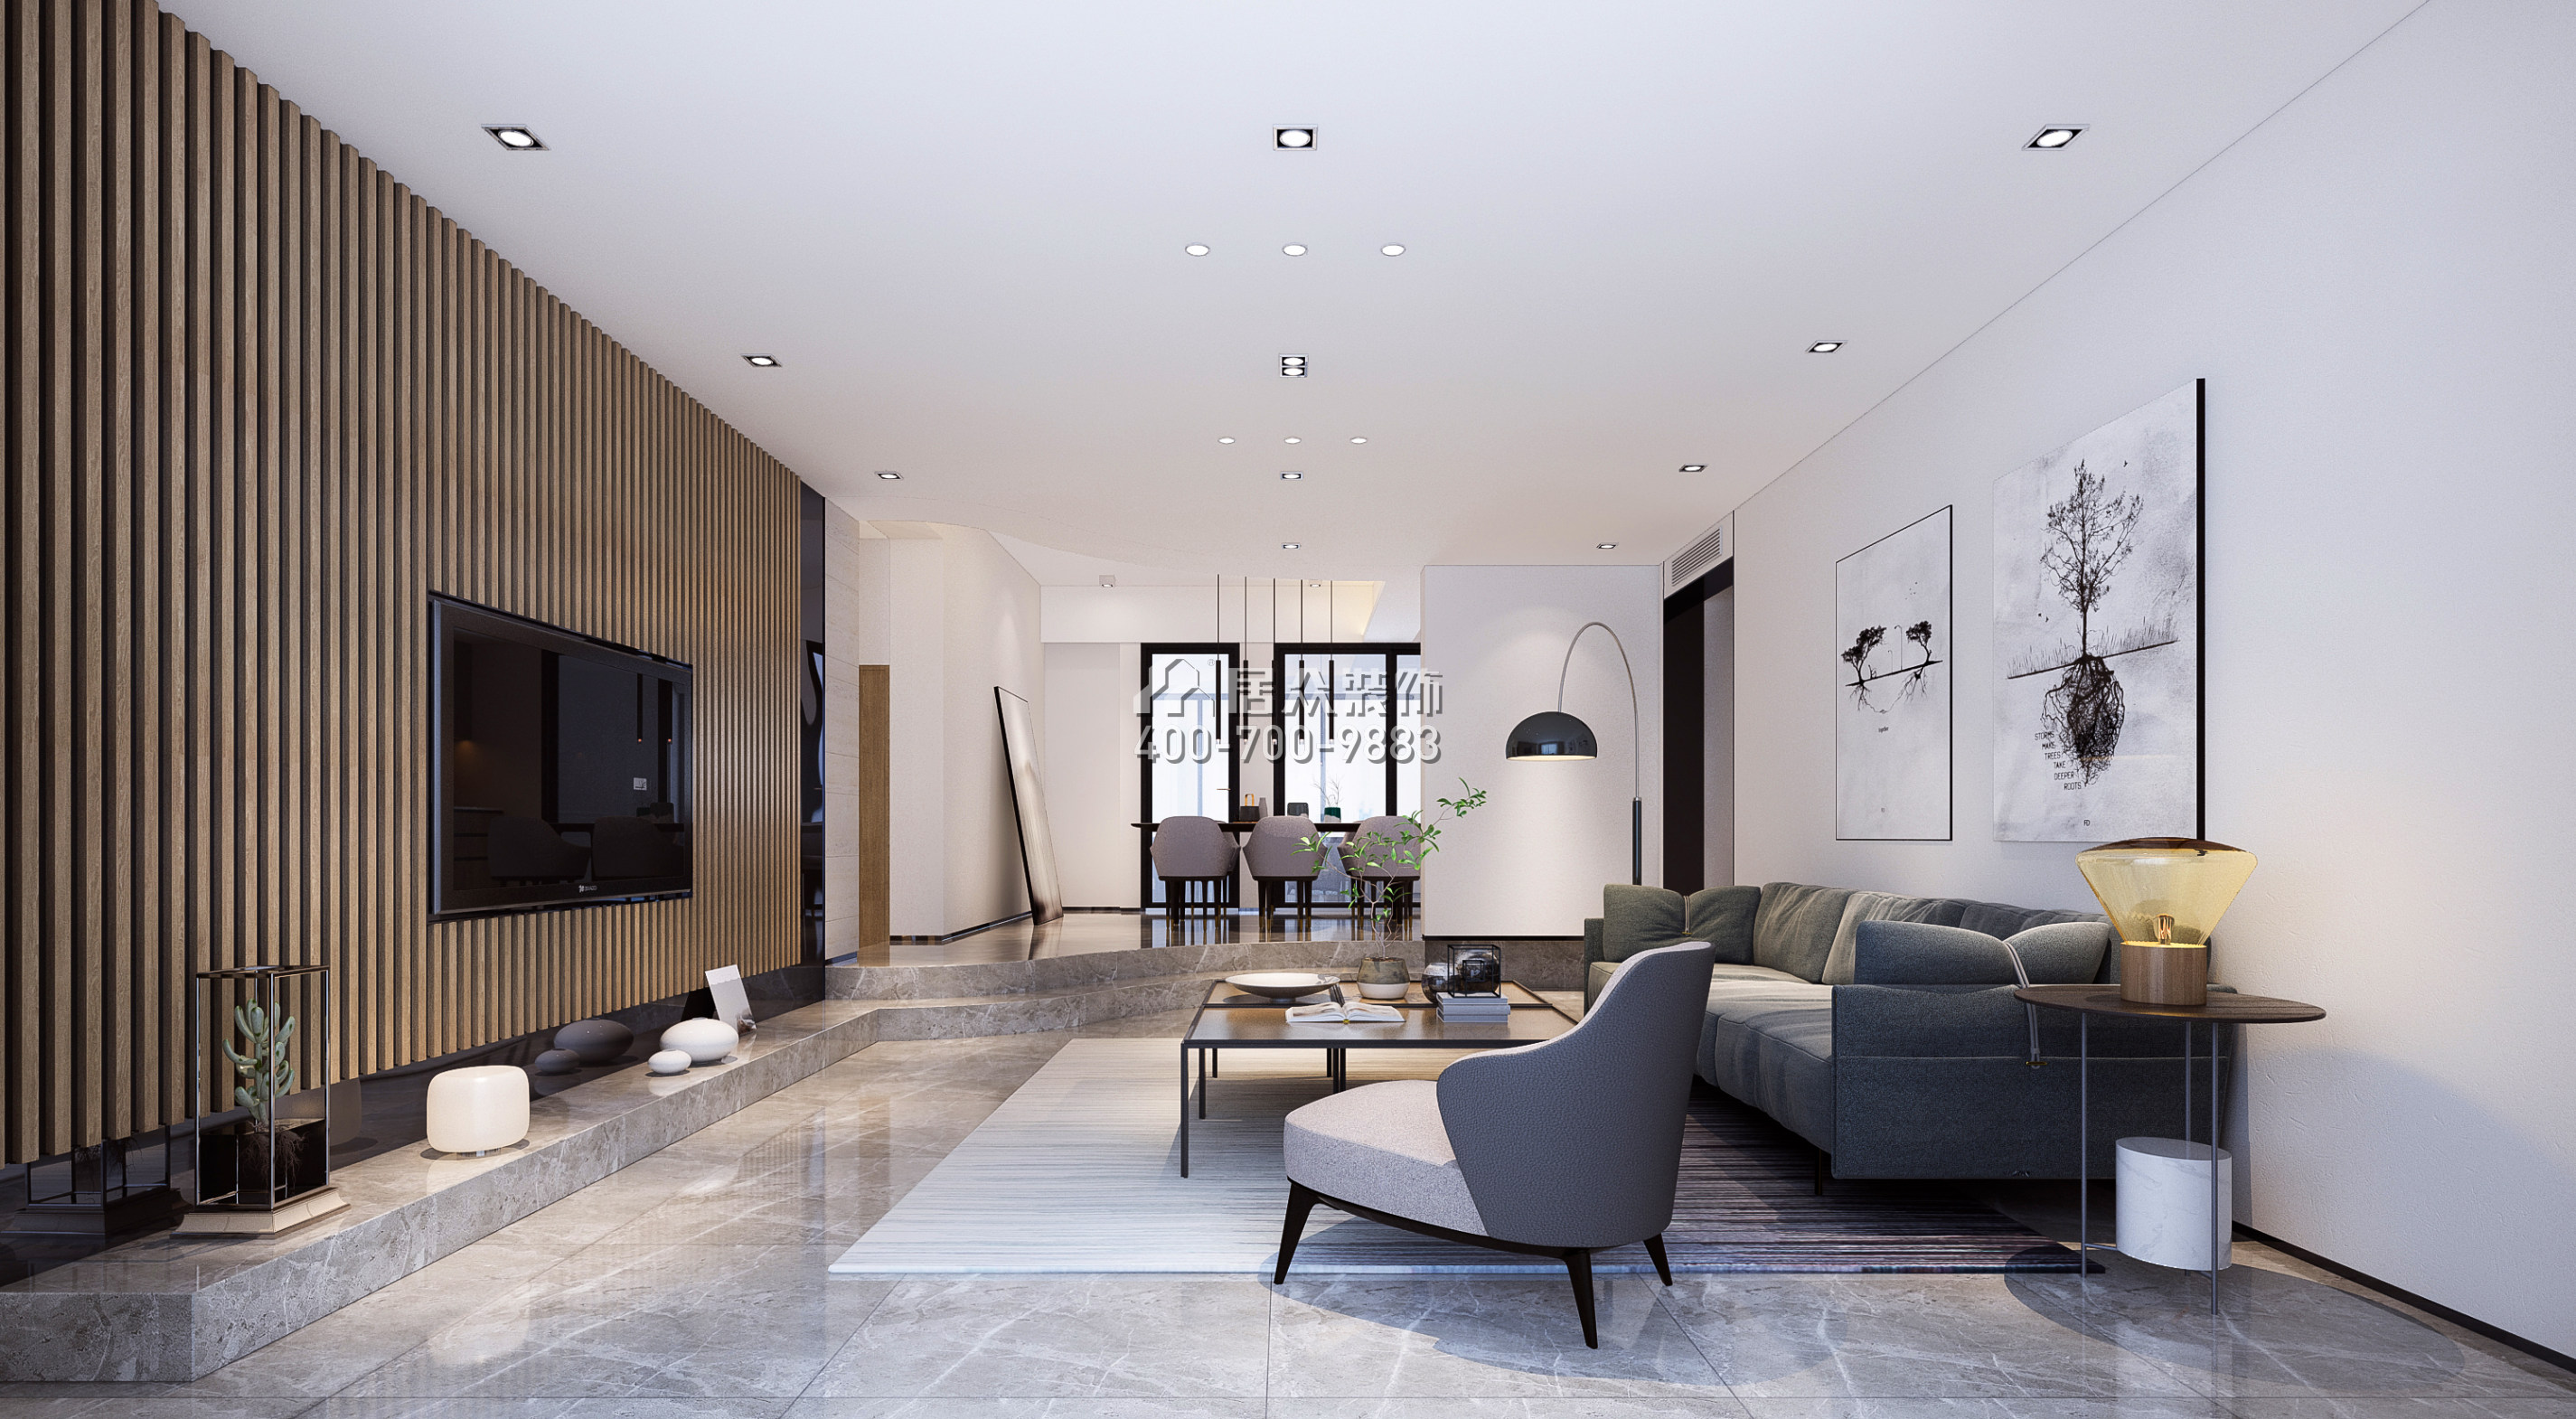 熙龍灣二期274平方米現代簡約風格復式戶型客廳裝修效果圖